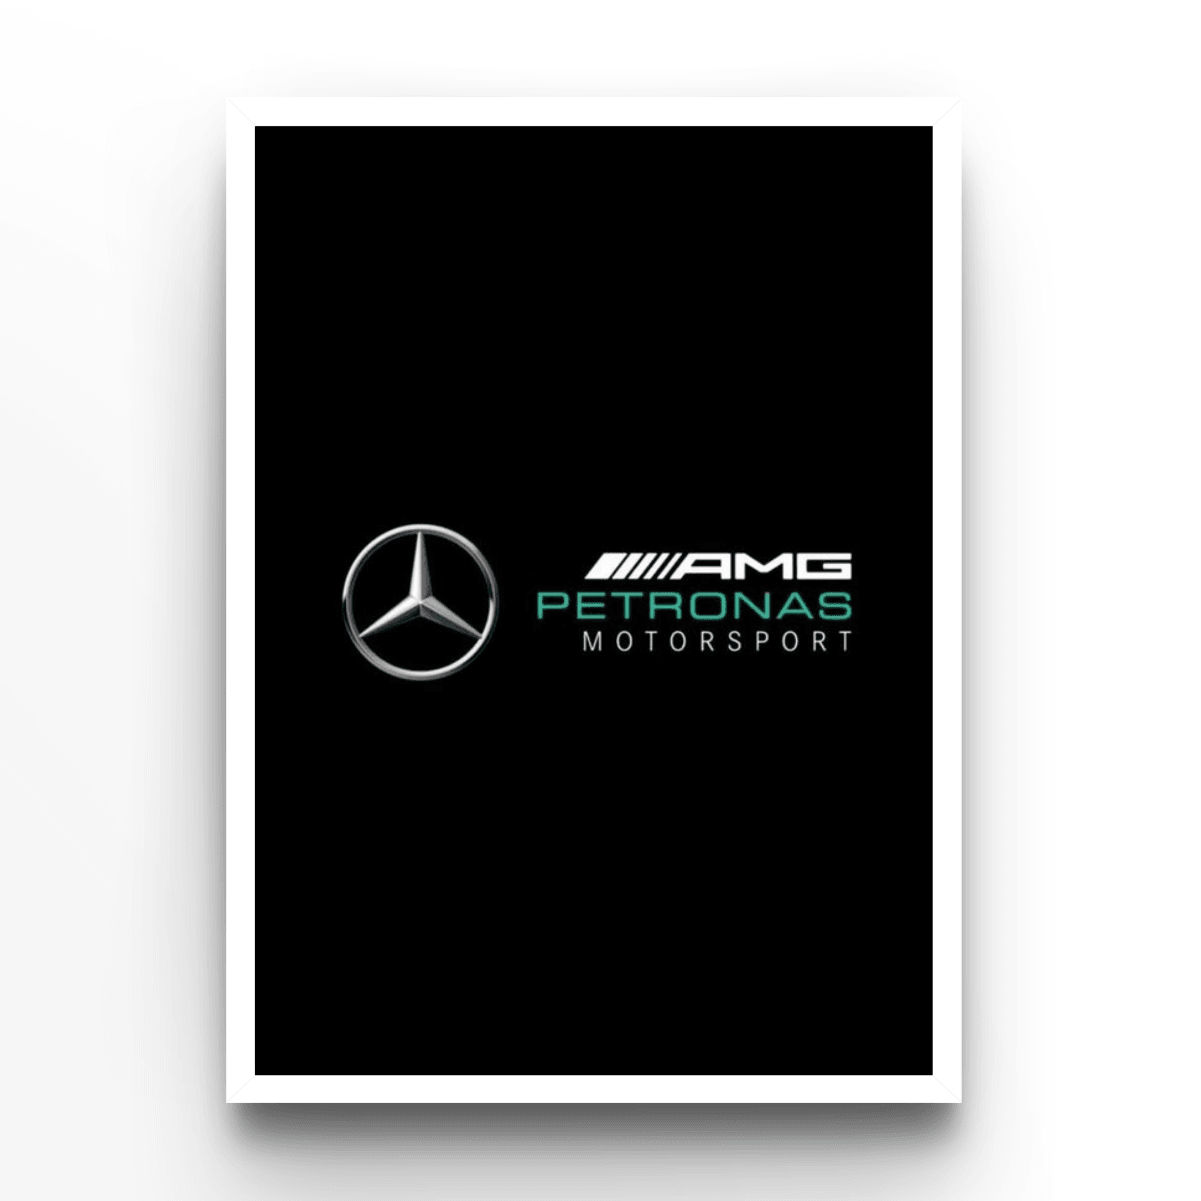 Mercedes - A4, A3, A2 Posters Base - Poster Print Shop / Art Prints / PostersBase